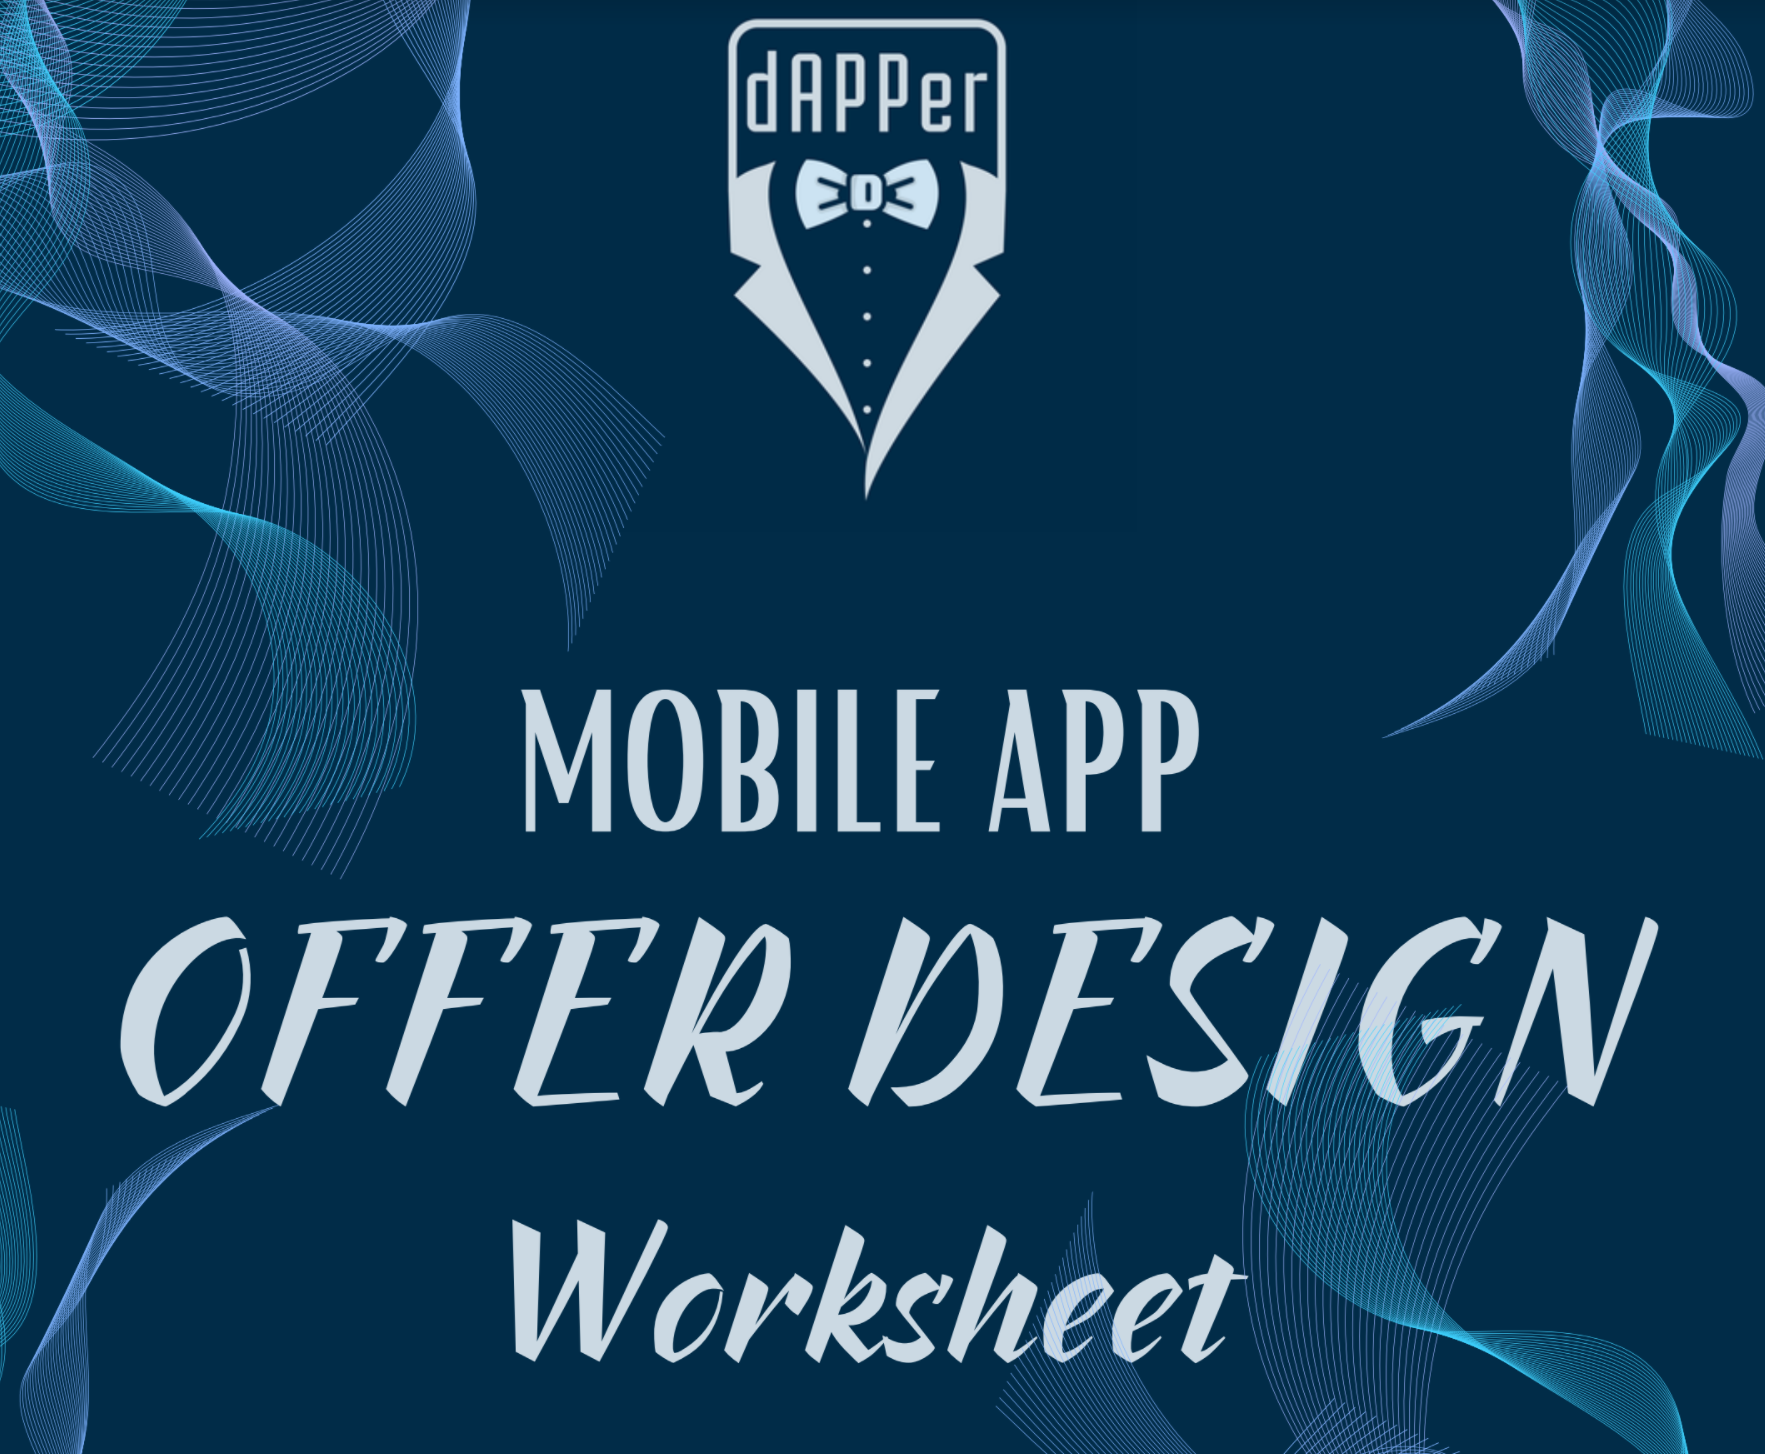 Mobile App Offer Design Worksheet